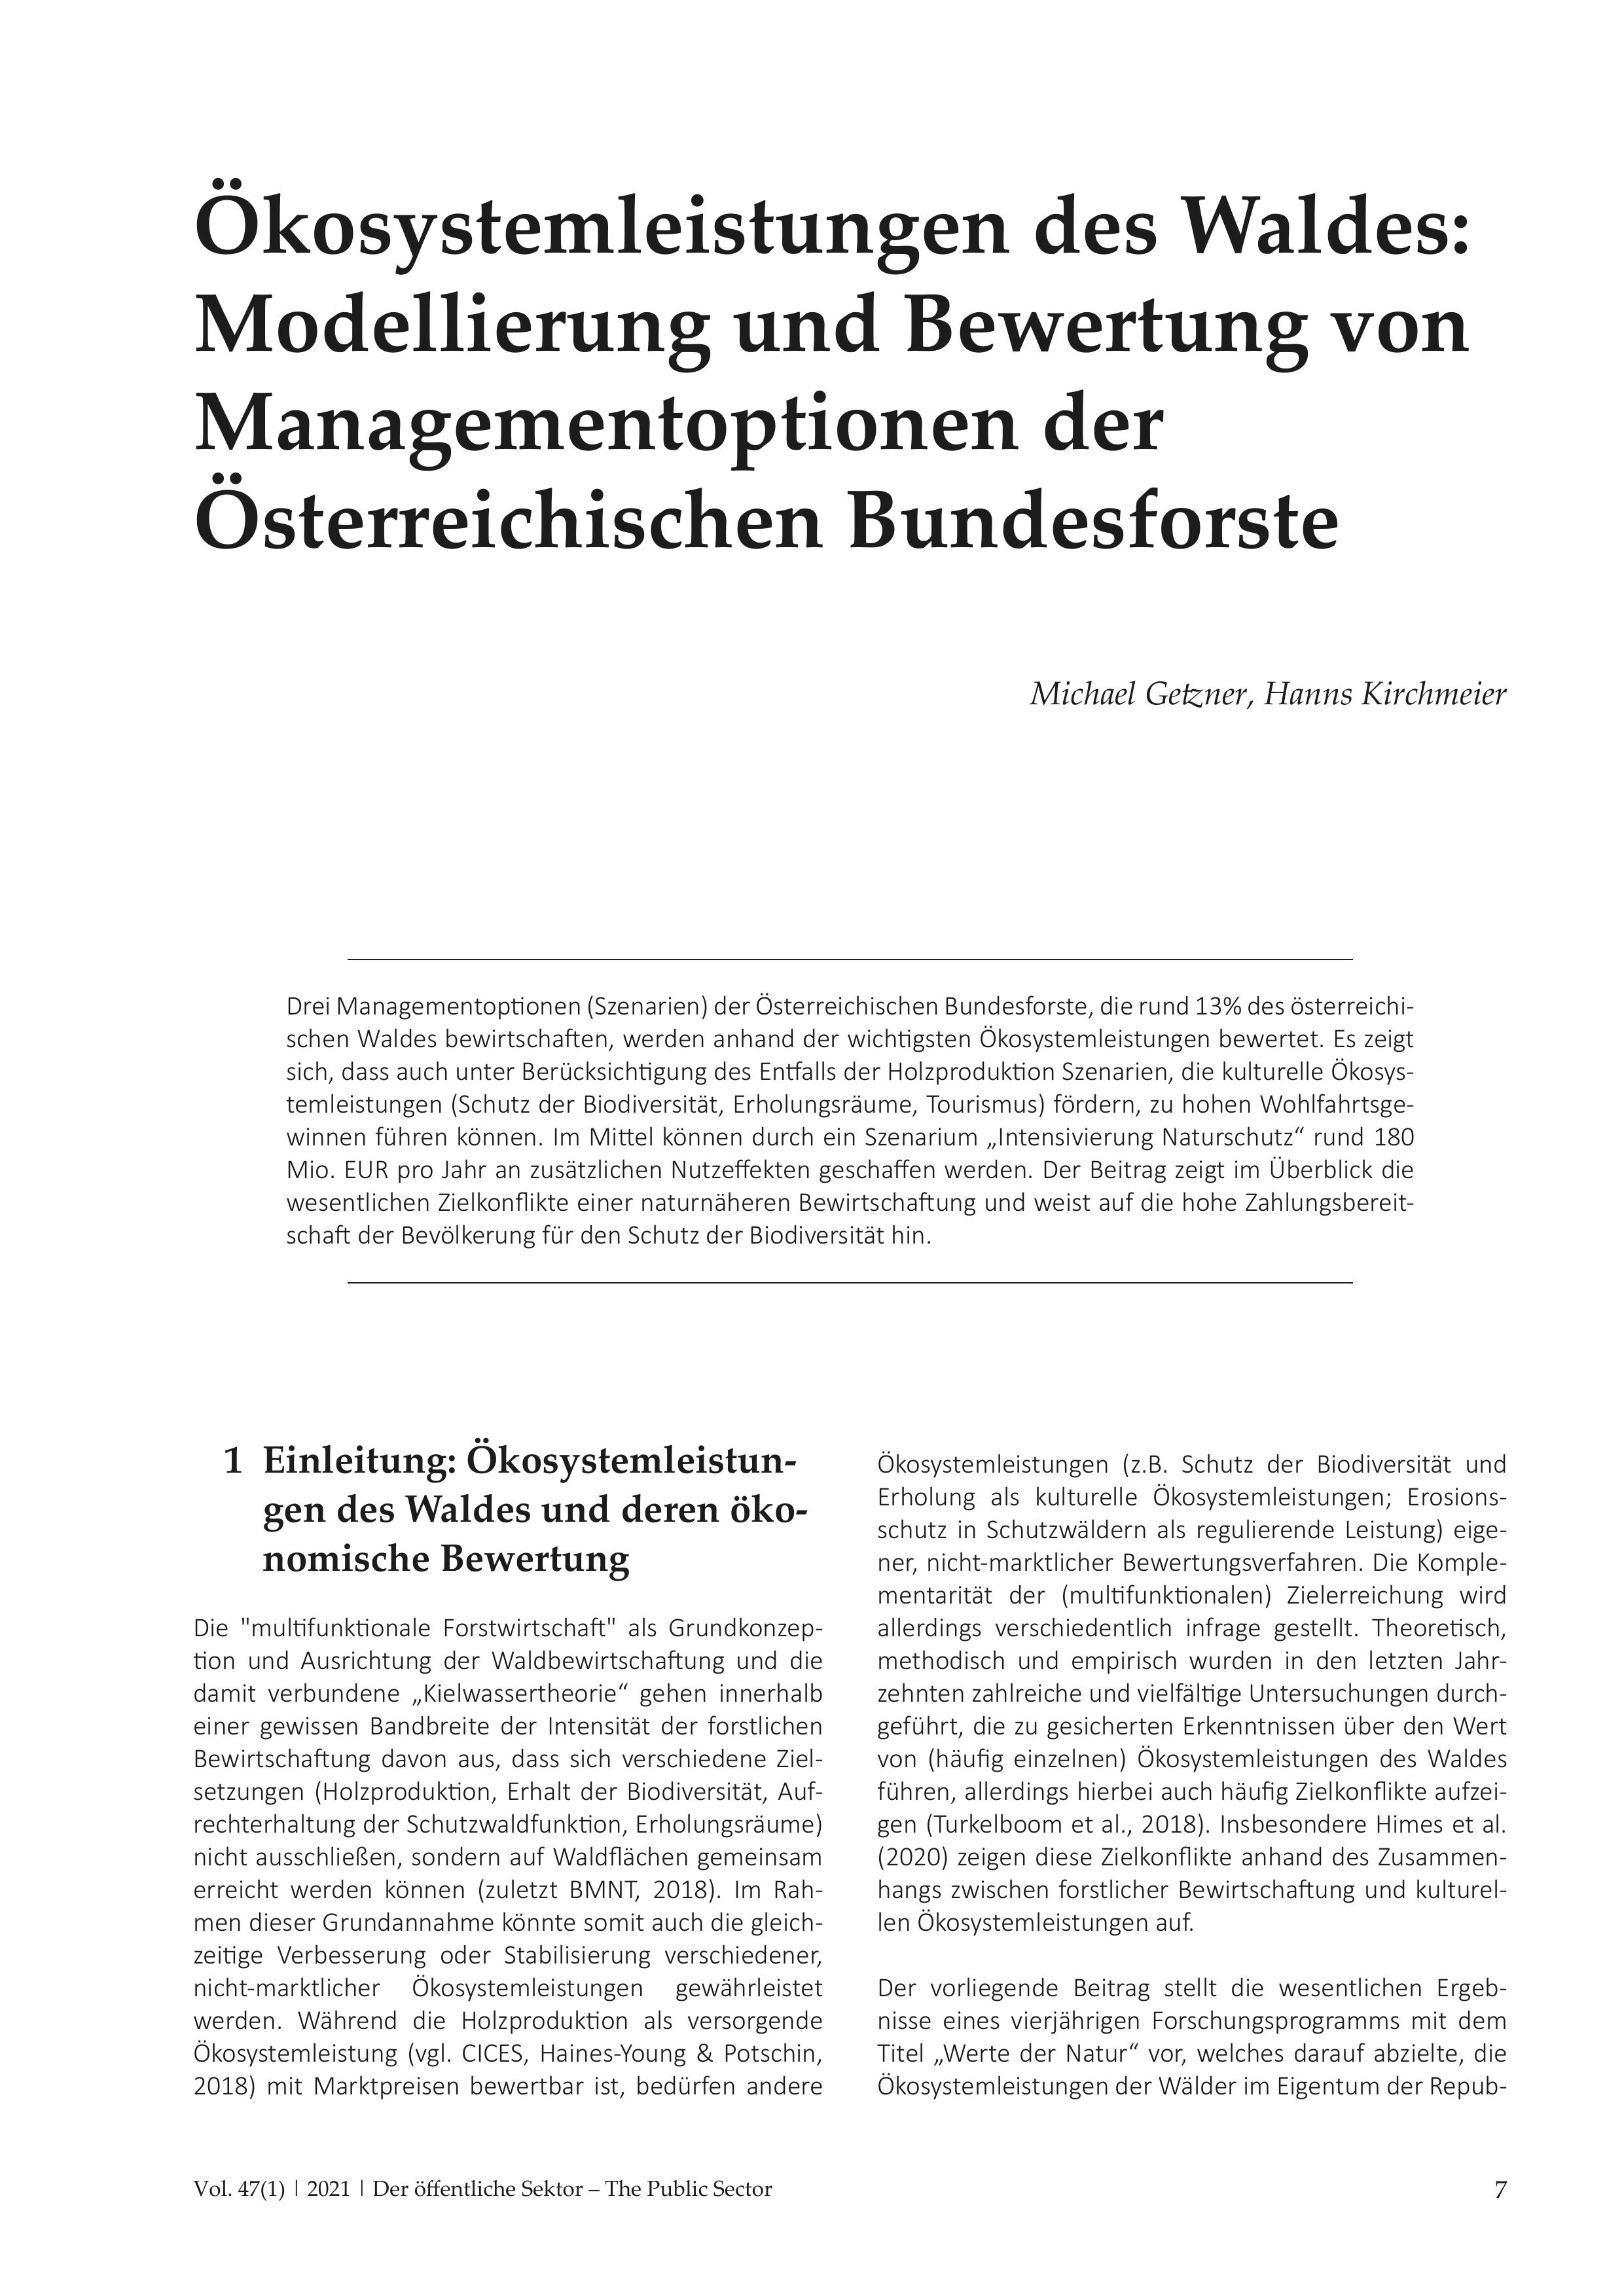 Ökosystemleistungen des Waldes: Modellierung und Bewertung von Managementoptionen der Österreichischen Bundesforste